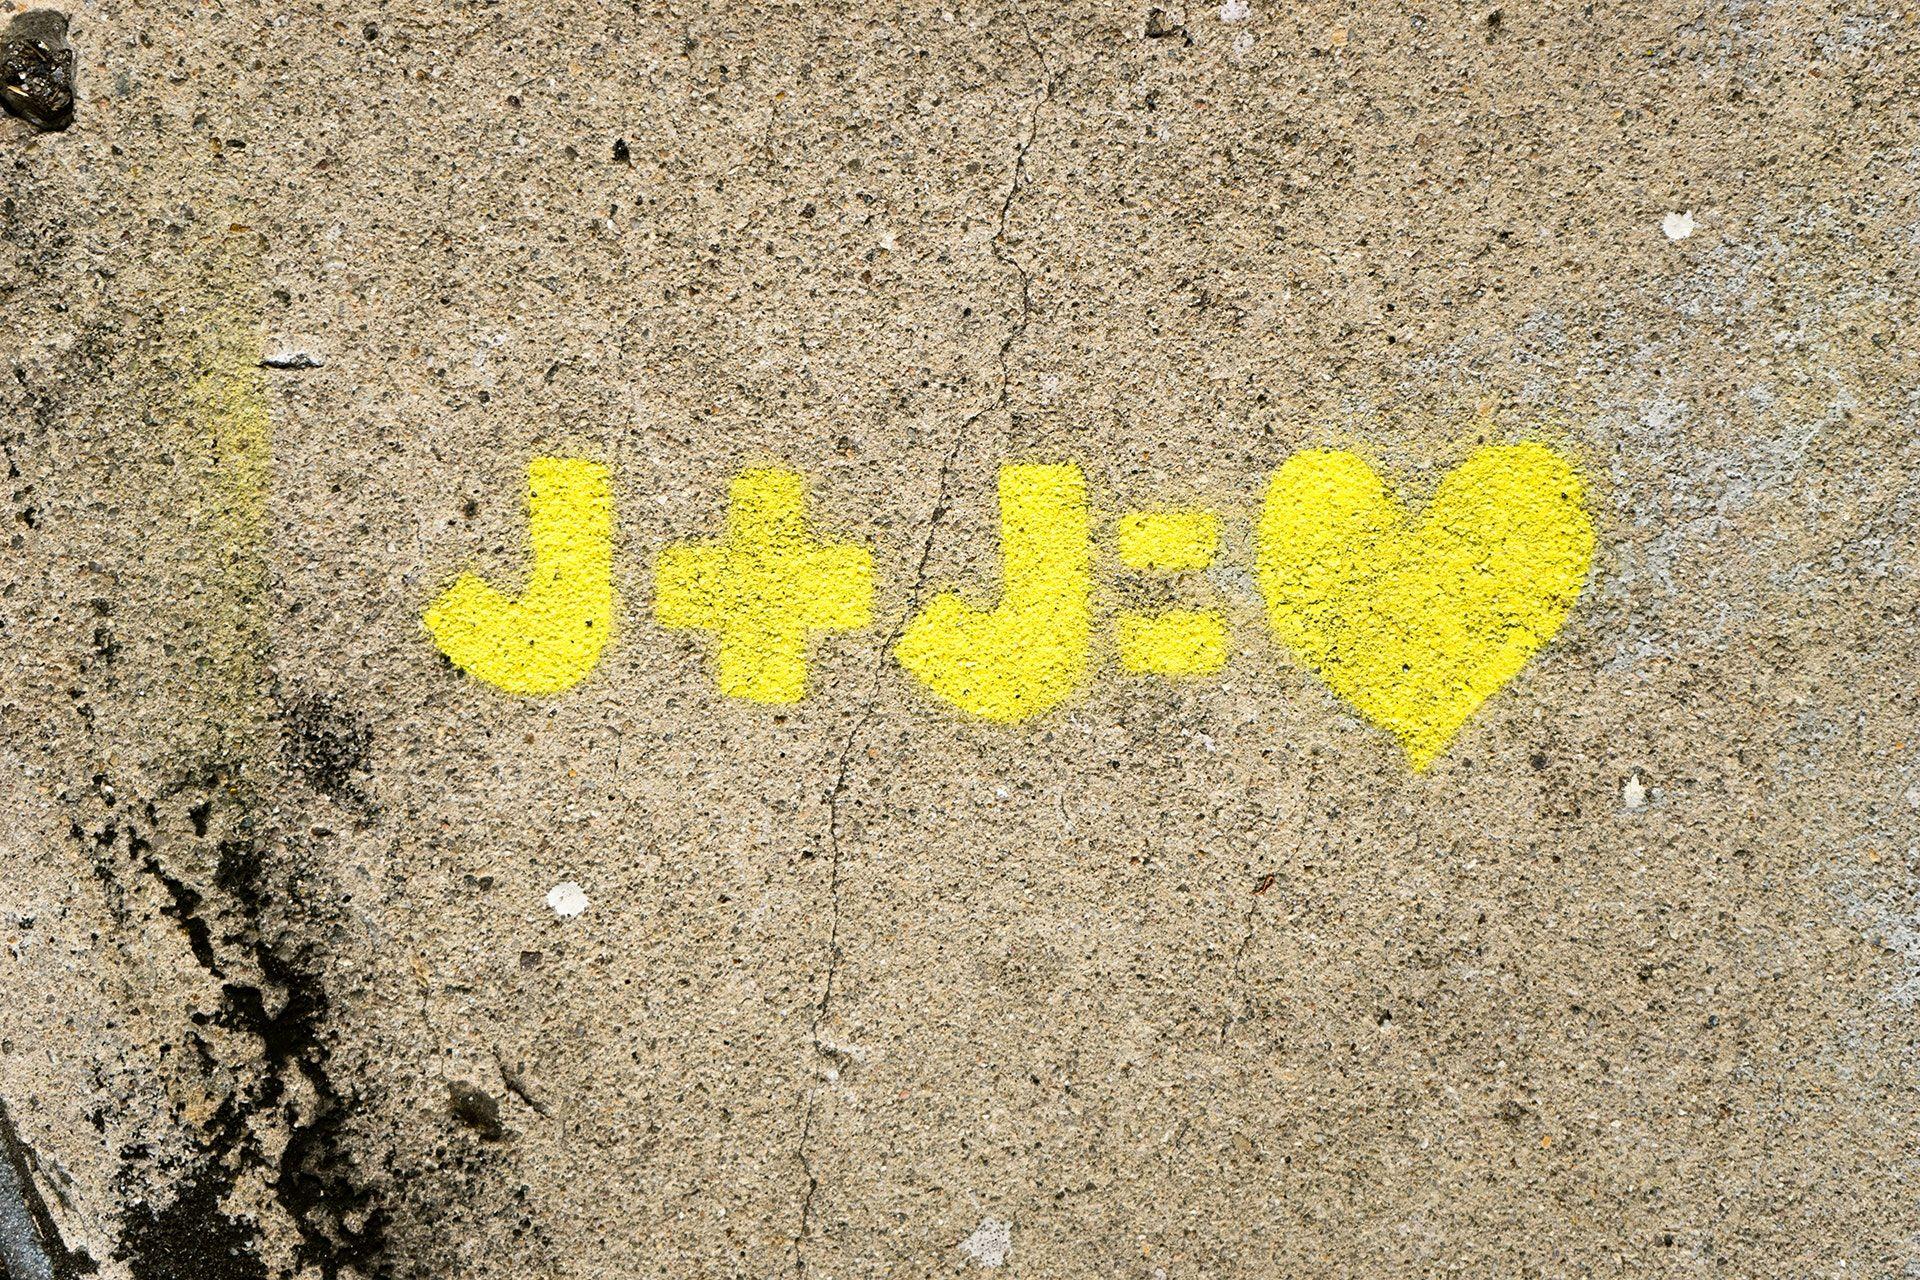 J Loves J Logo - J+j= Heart Painting · Free Stock Photo